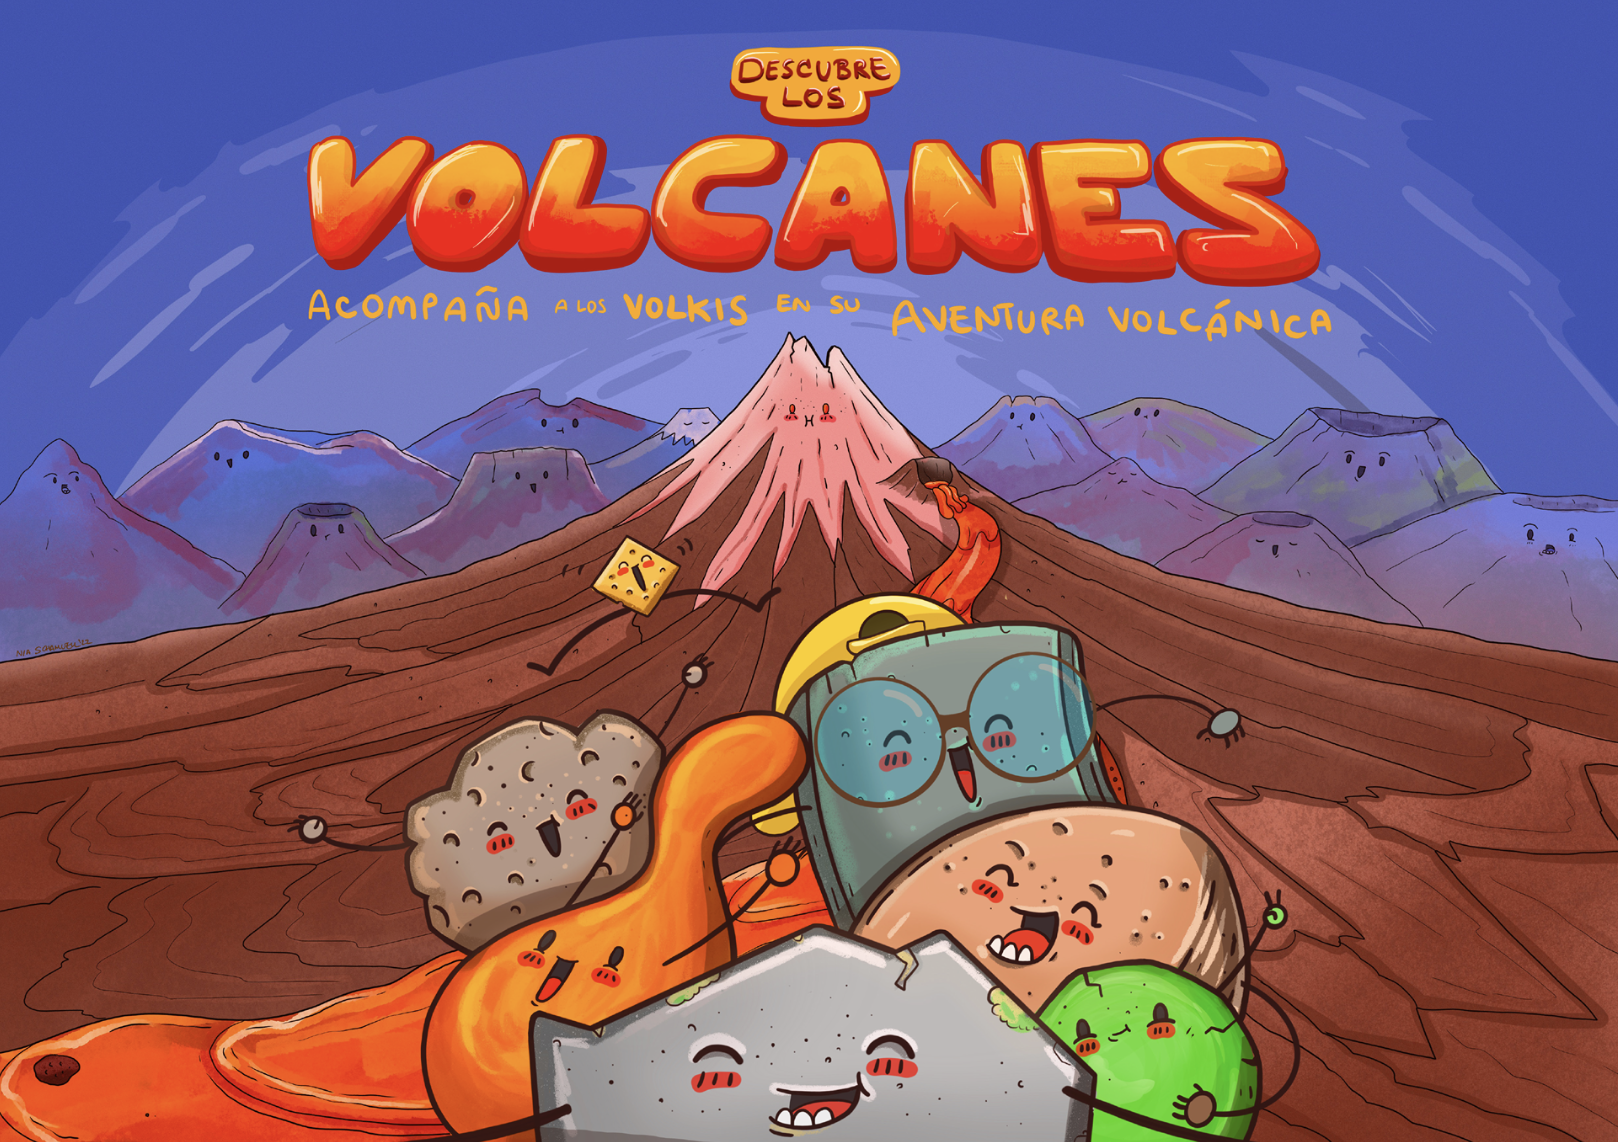 Cubierta del libro Descubre los volcanes. Acompaña a los volkis en su aventura volcánica.